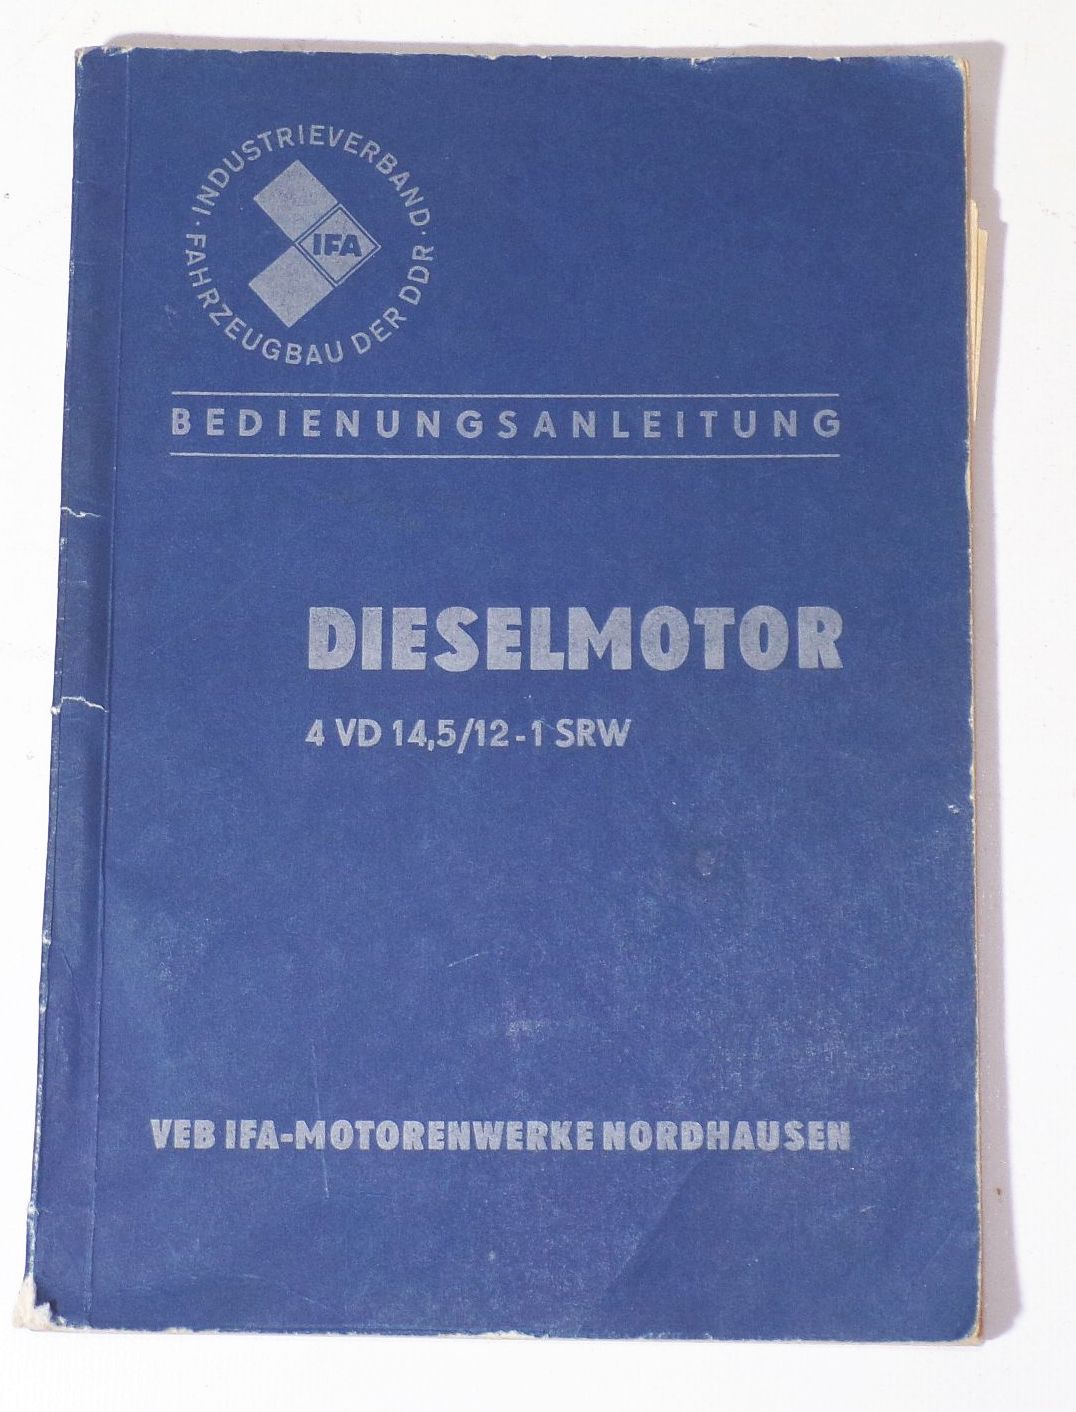 Bedienungsanleitung Dieselmotor 4 VD 14,5 / 12 - 1 SRW 1966 Ifa 